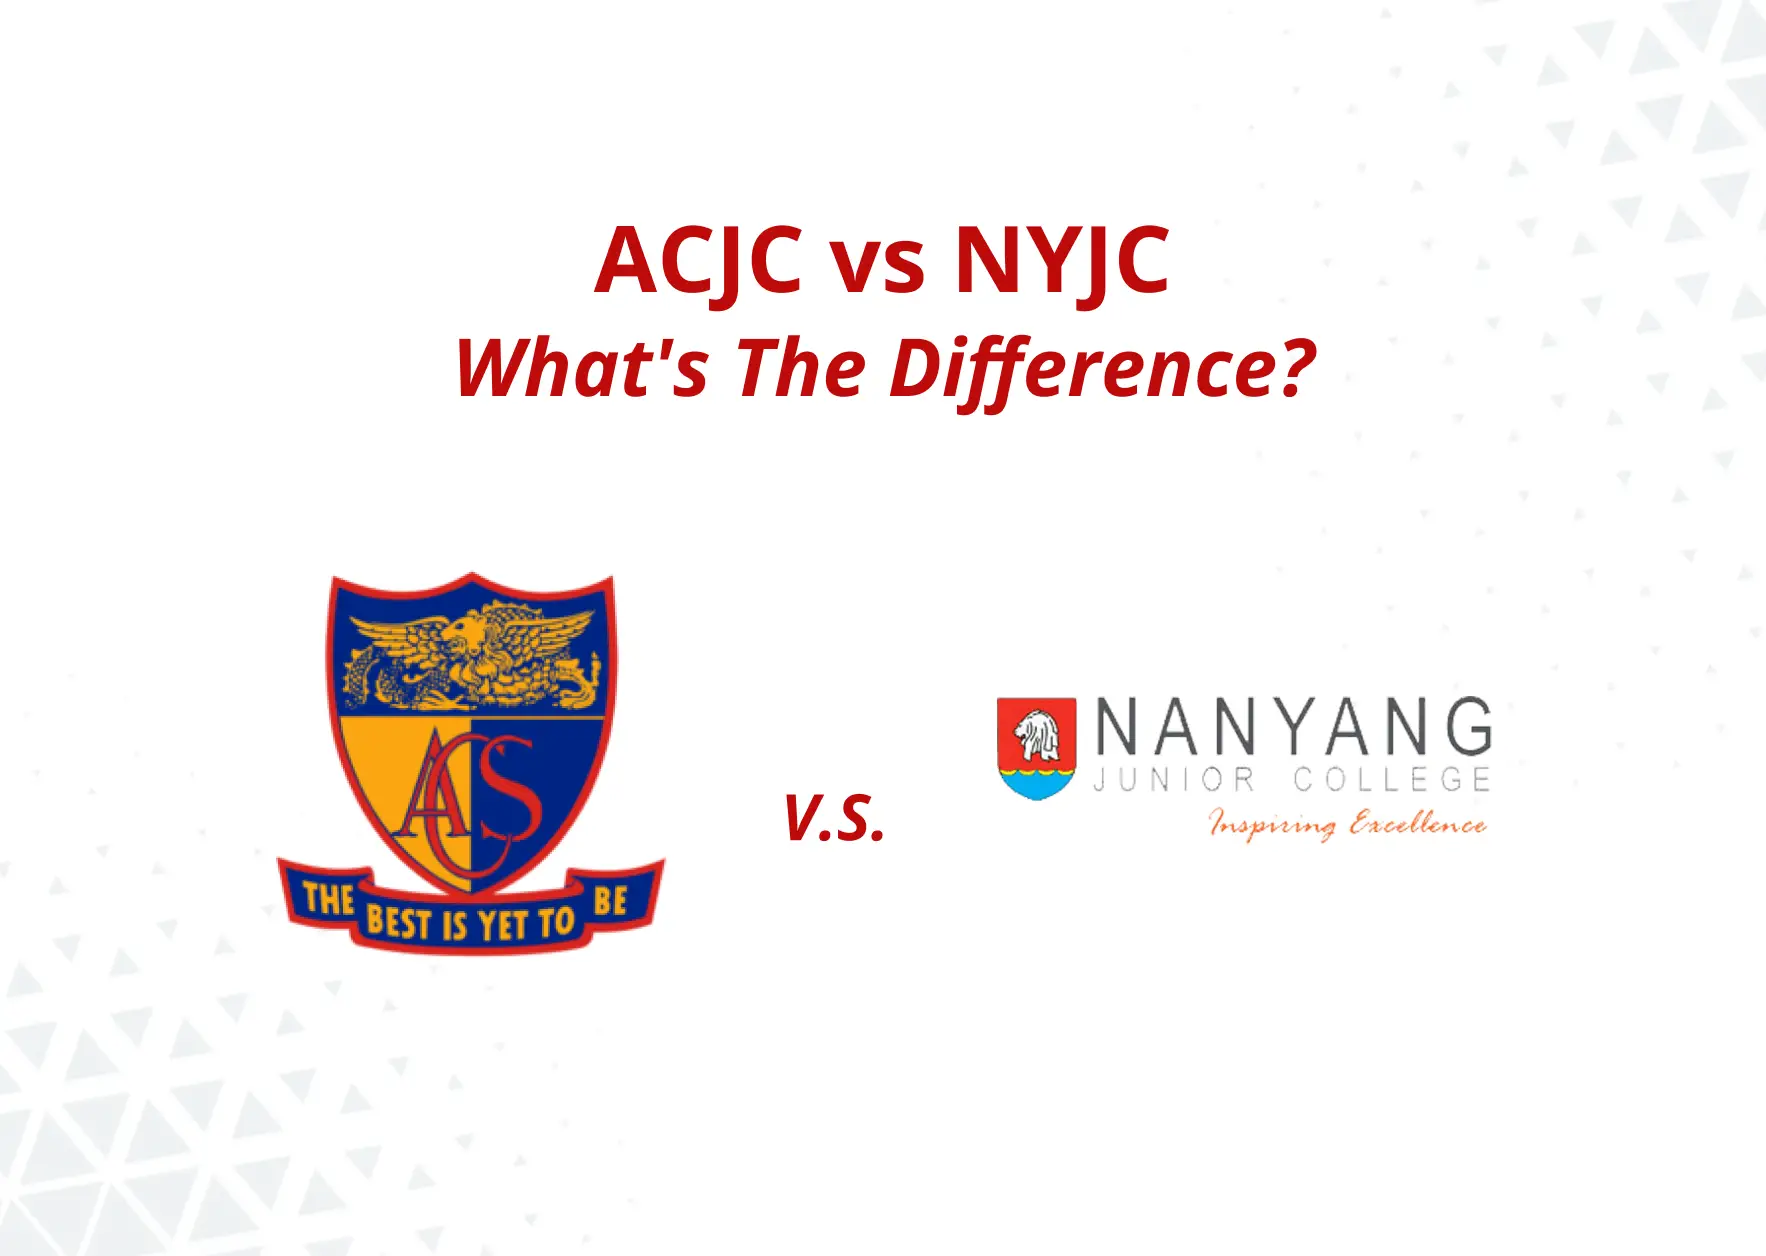 ACJC vs NYJC